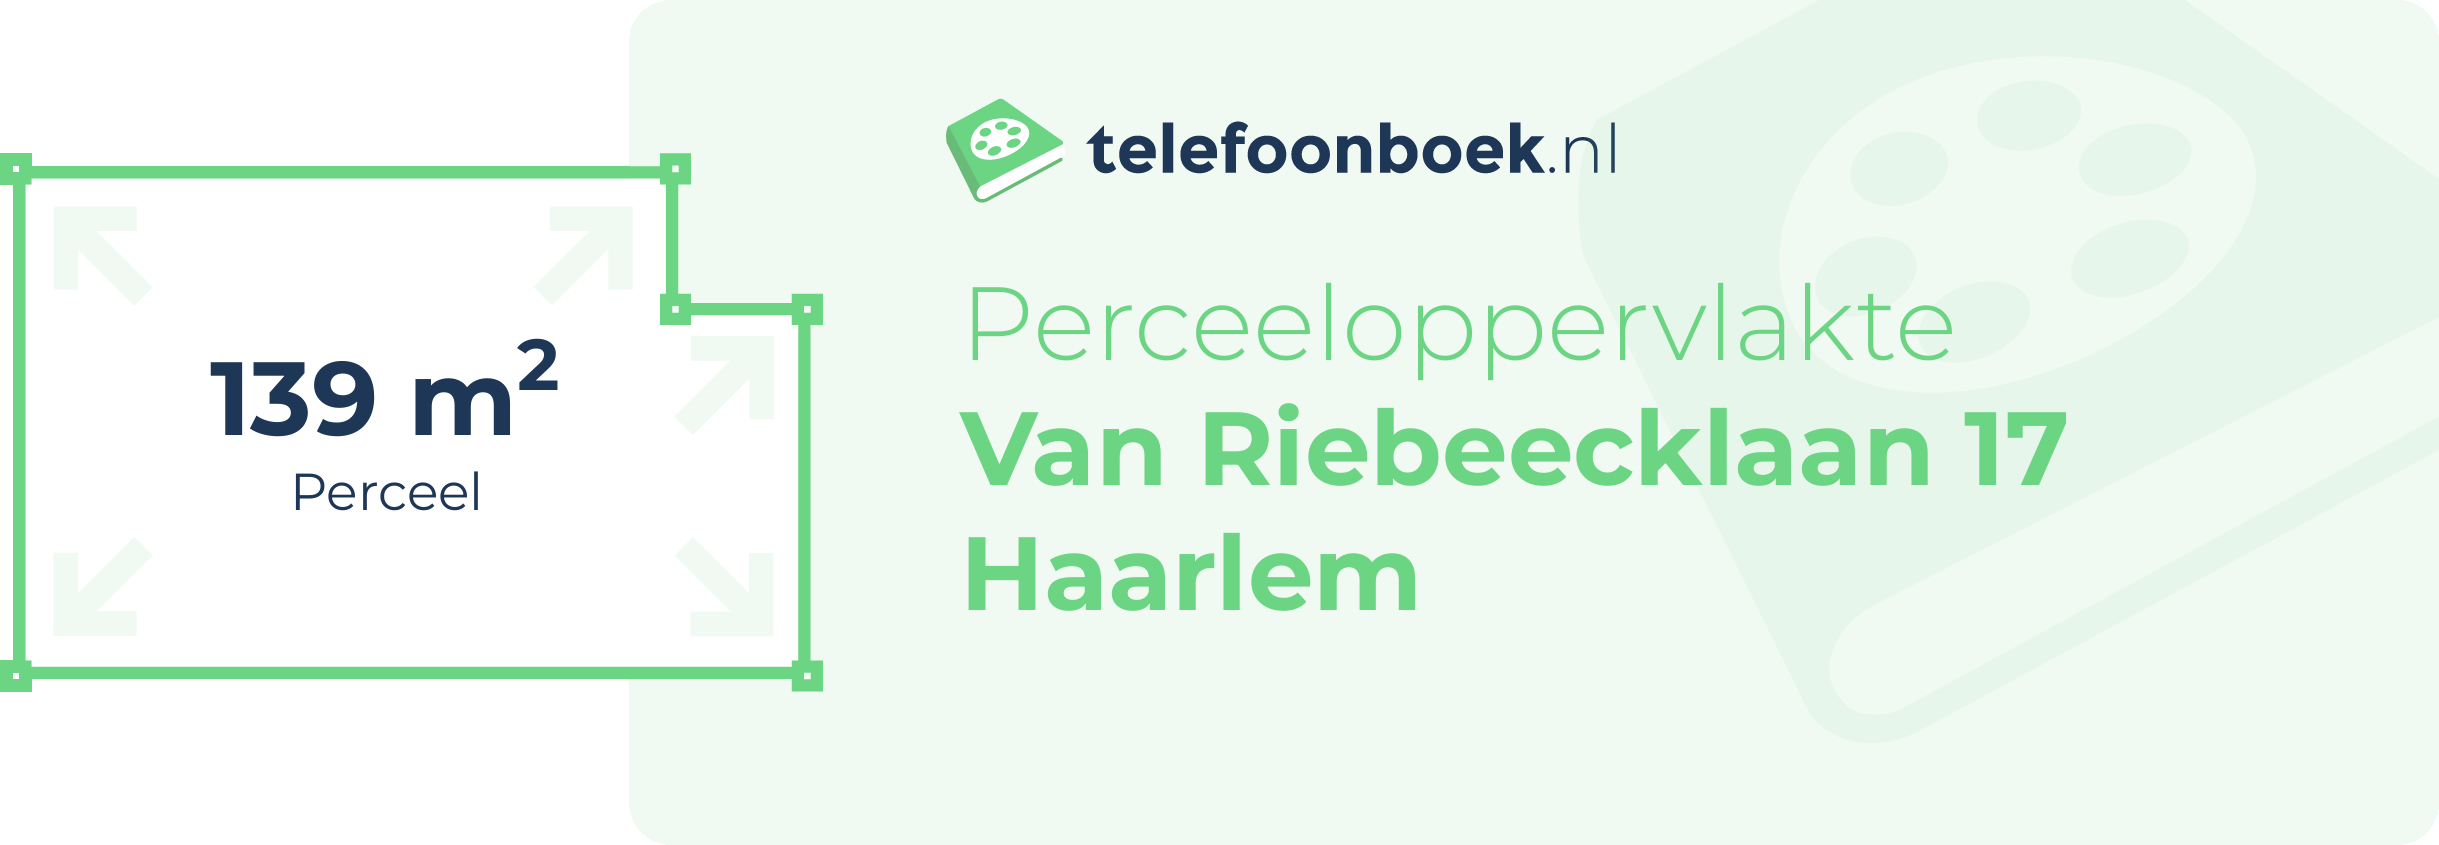 Perceeloppervlakte Van Riebeecklaan 17 Haarlem